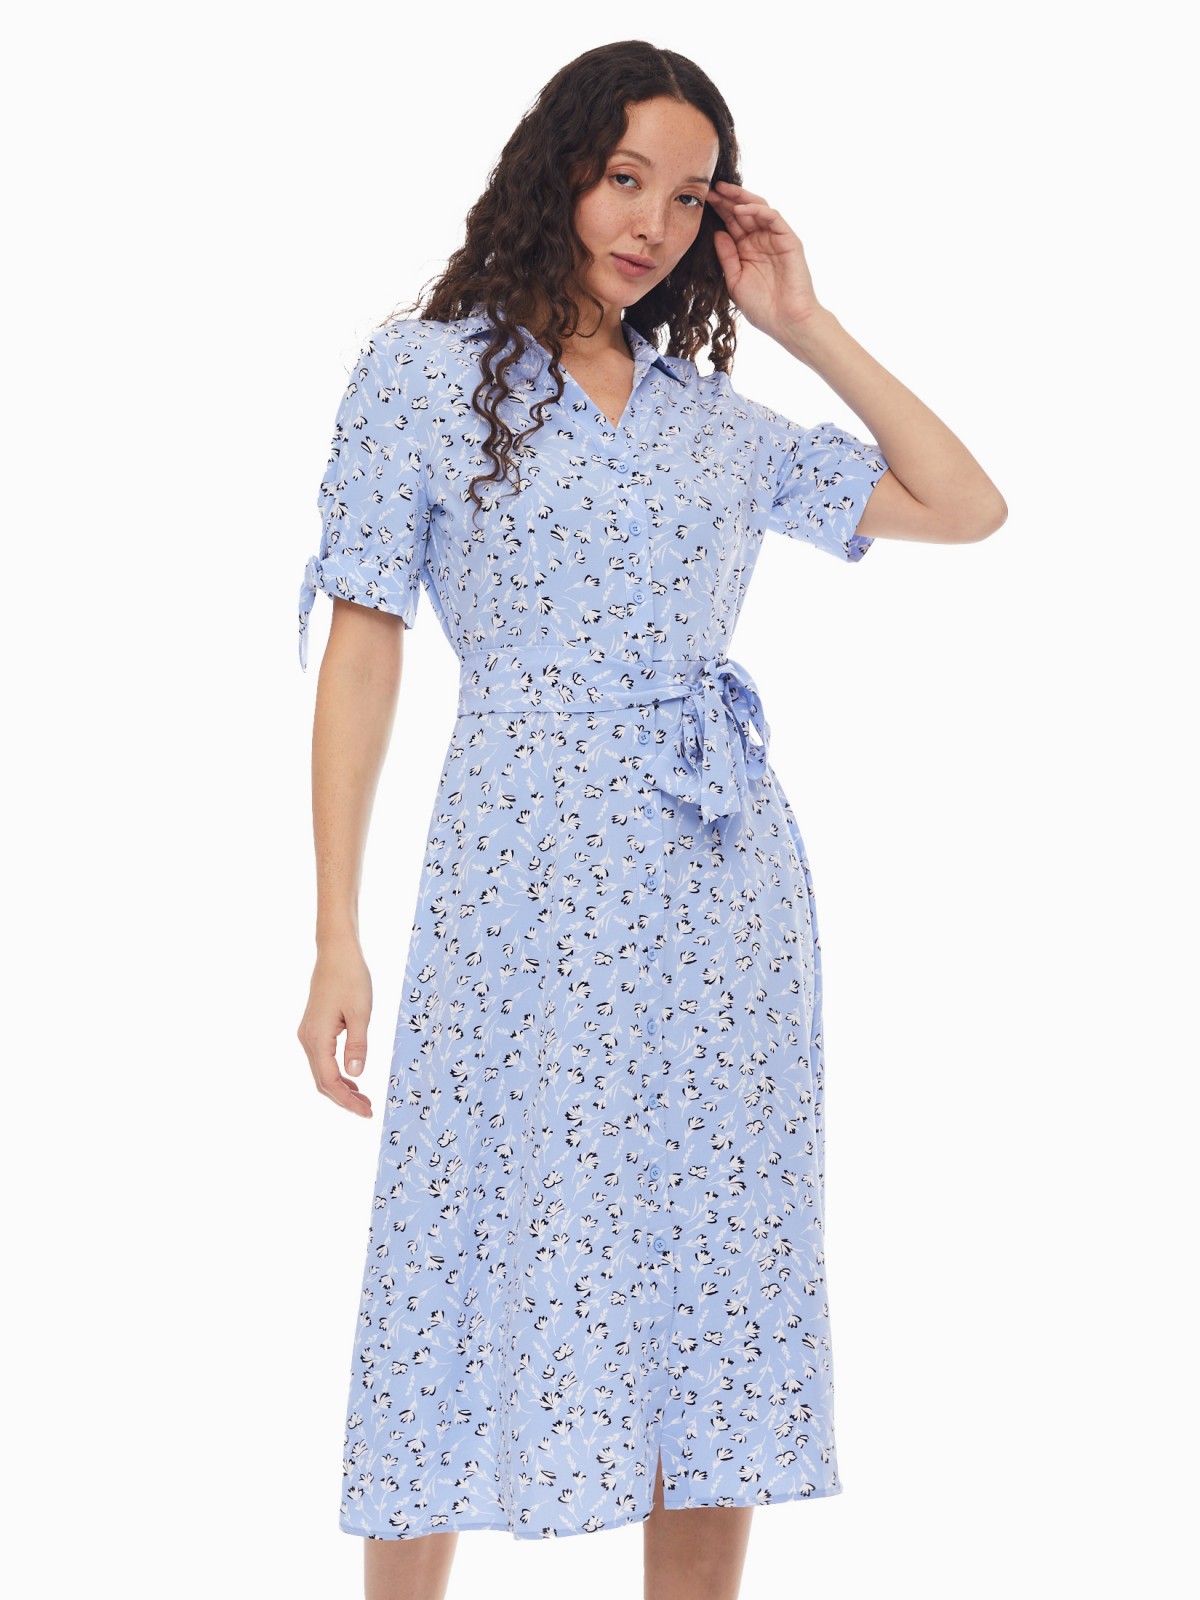 Платье-рубашка с поясом и акцентными короткими рукавами zolla 024138240412, цвет светло-голубой, размер XS